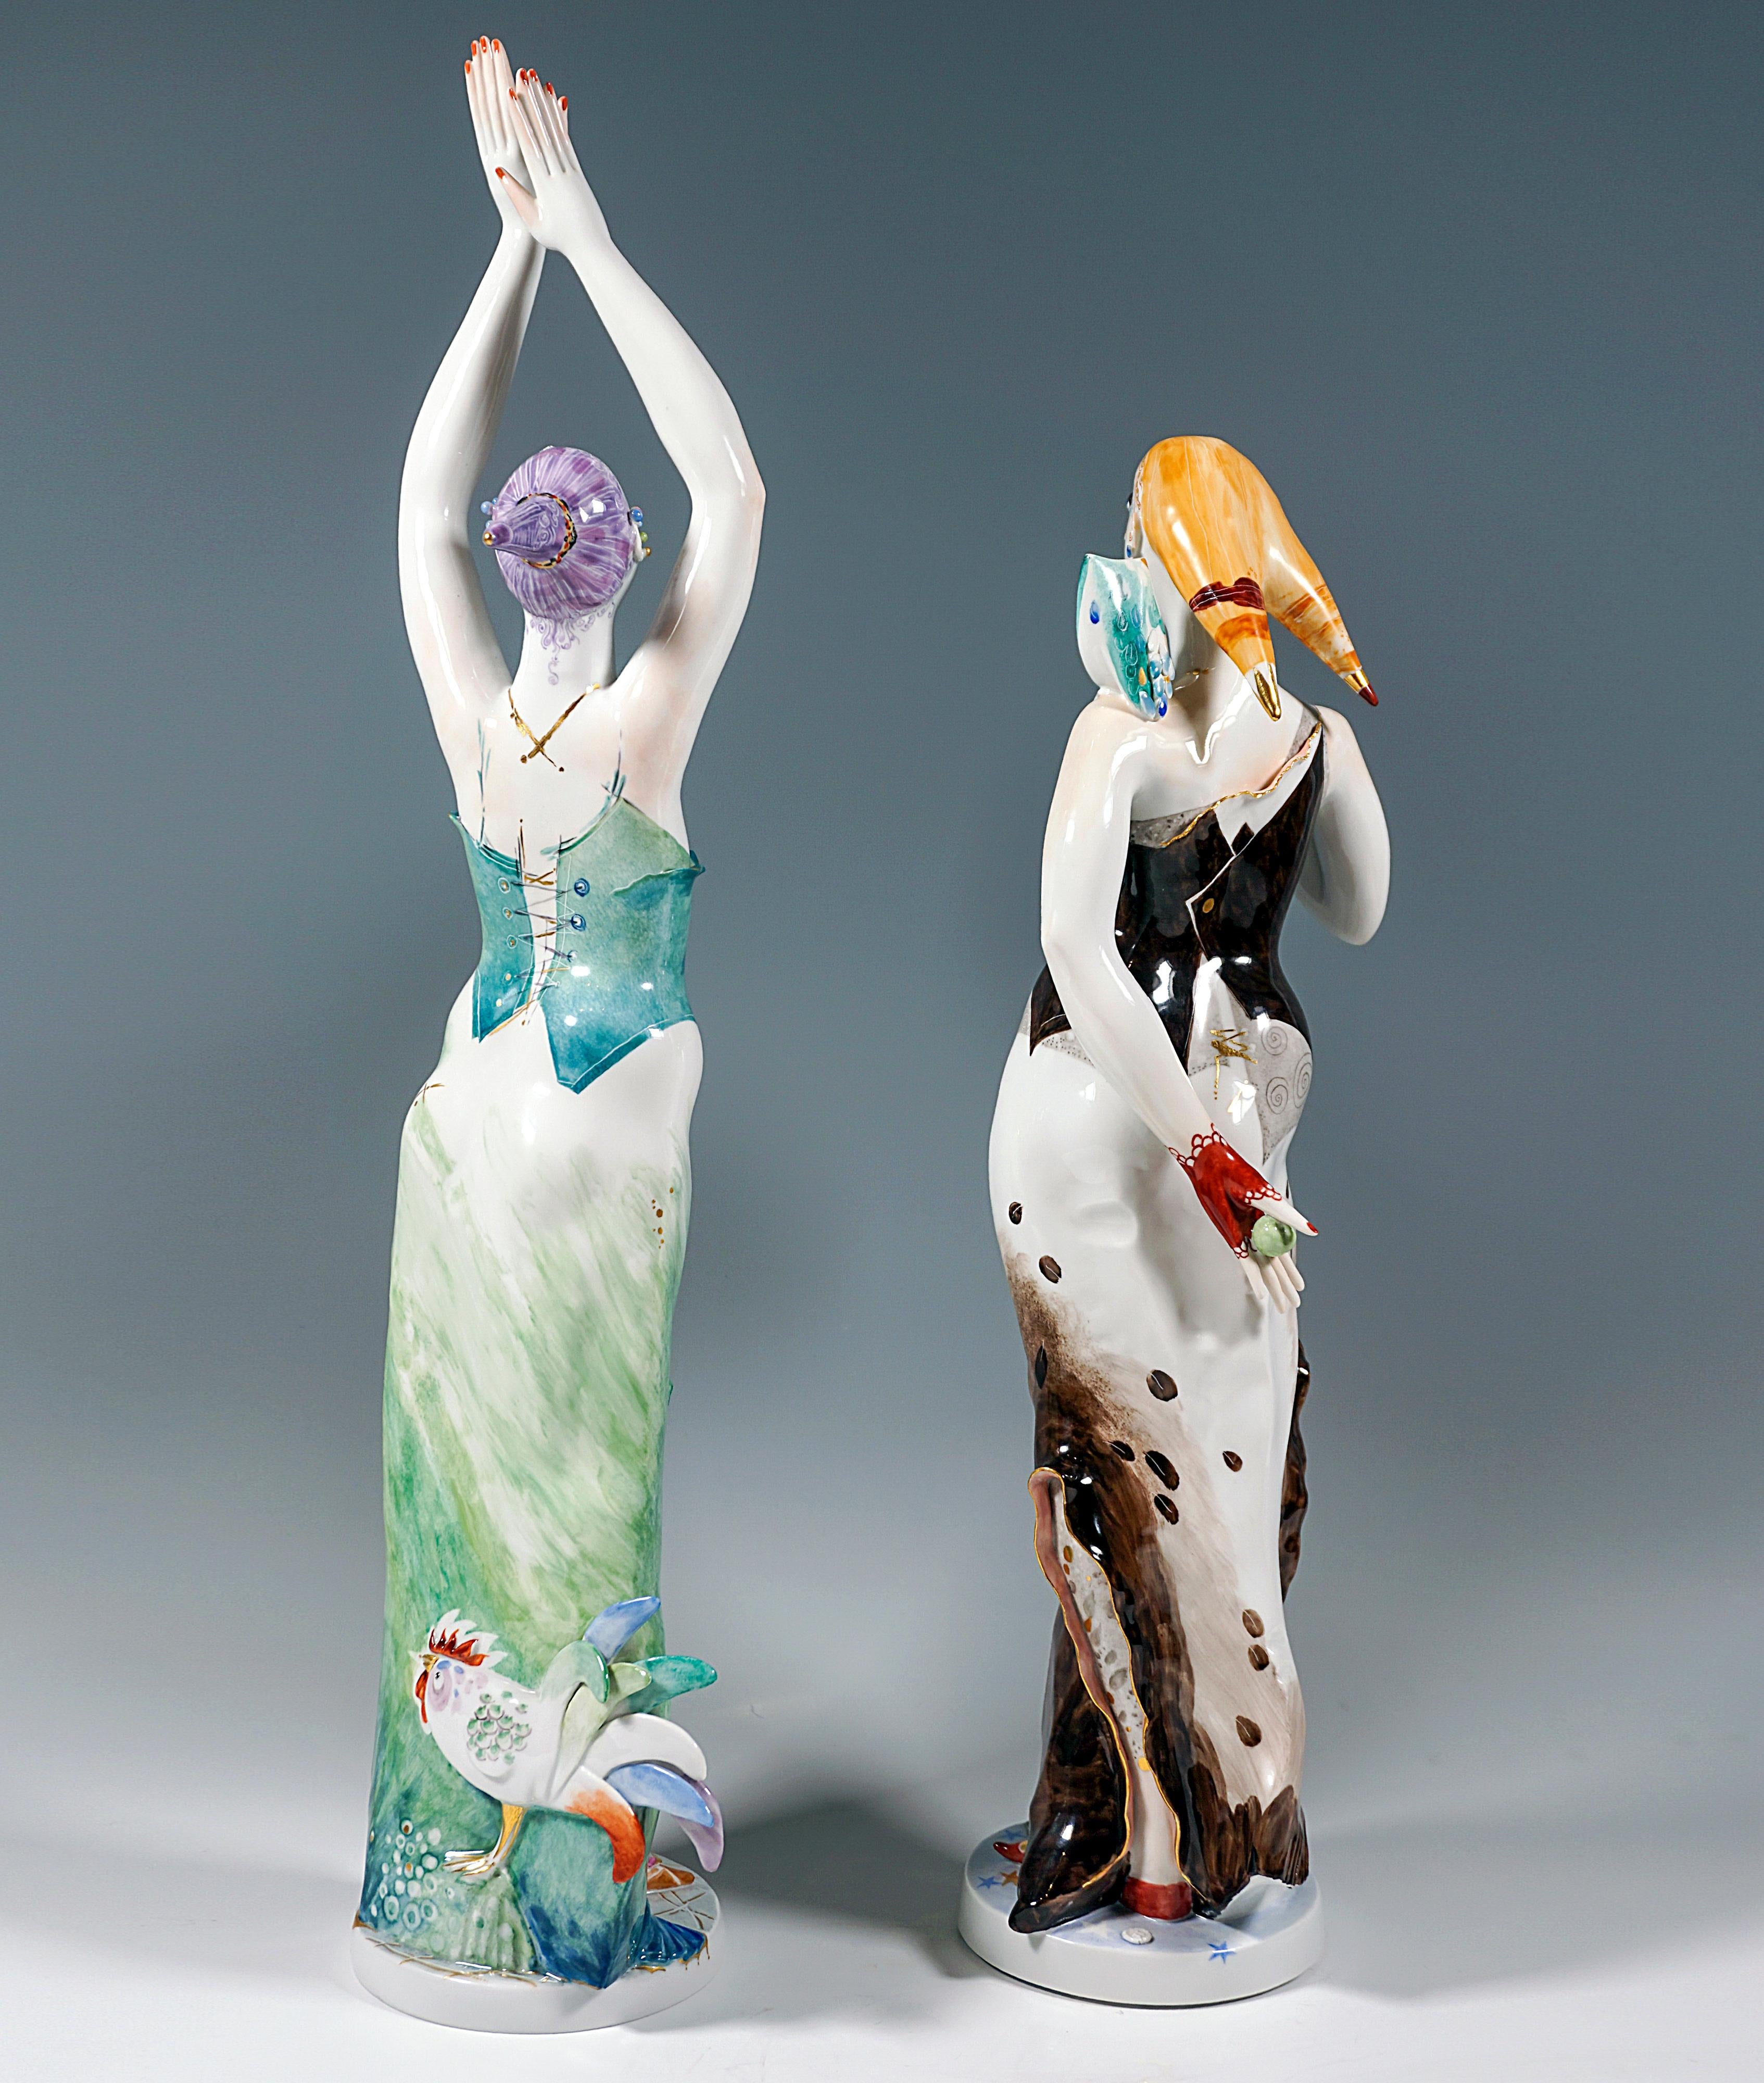 Une paire de grandes allégories excellemment travaillées - Day & Night sous la forme de deux figures féminines élancées célébrant la féminité :
La figure représentant le Jour est vêtue de teintes fraîches et printanières, vert-turquoise-bleu, le